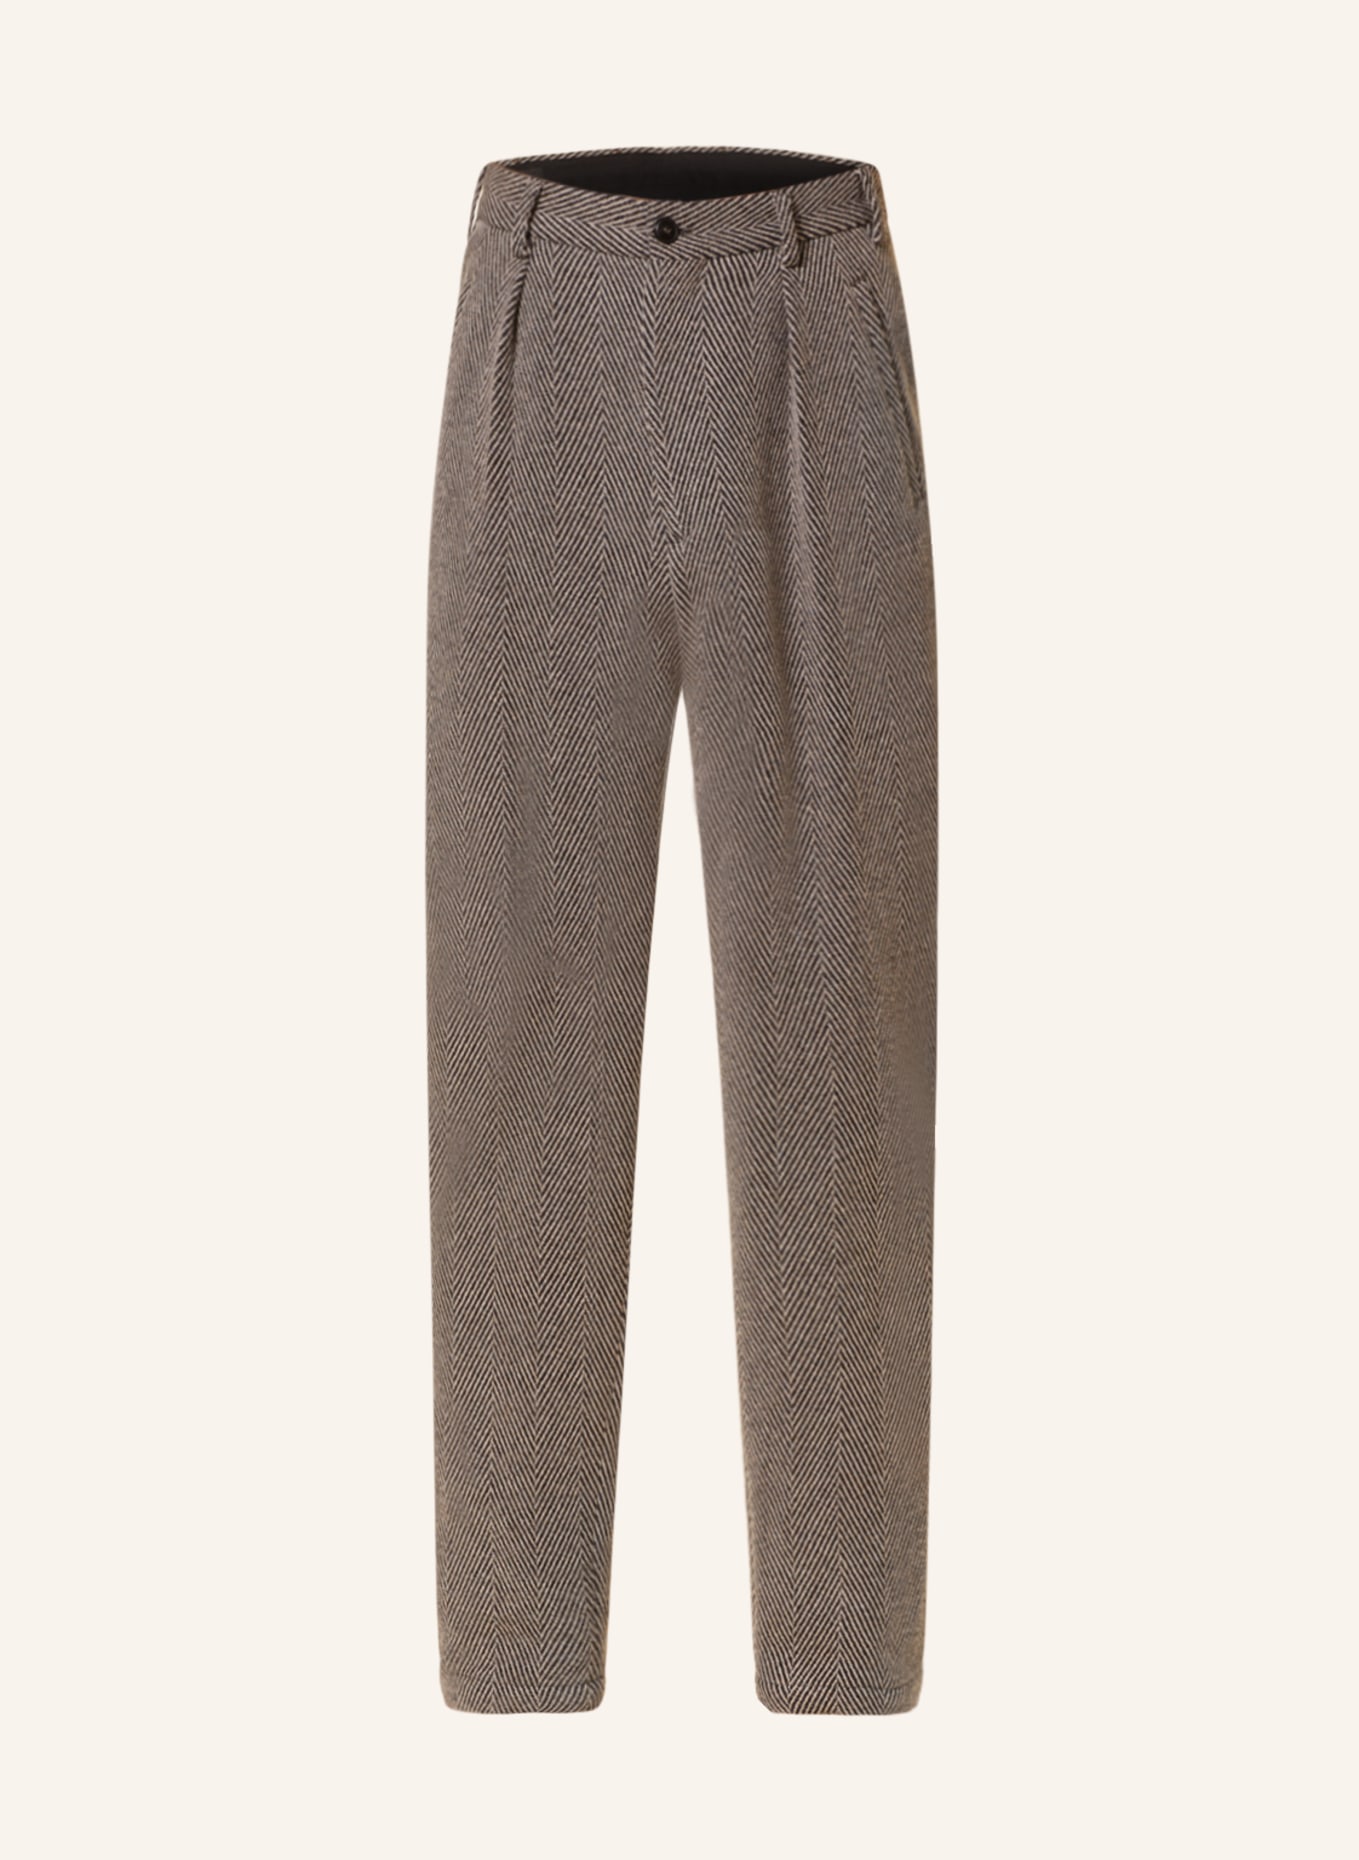 GIORGIO ARMANI Trousers slim fit, Color: DARK GRAY/ BEIGE (Image 1)